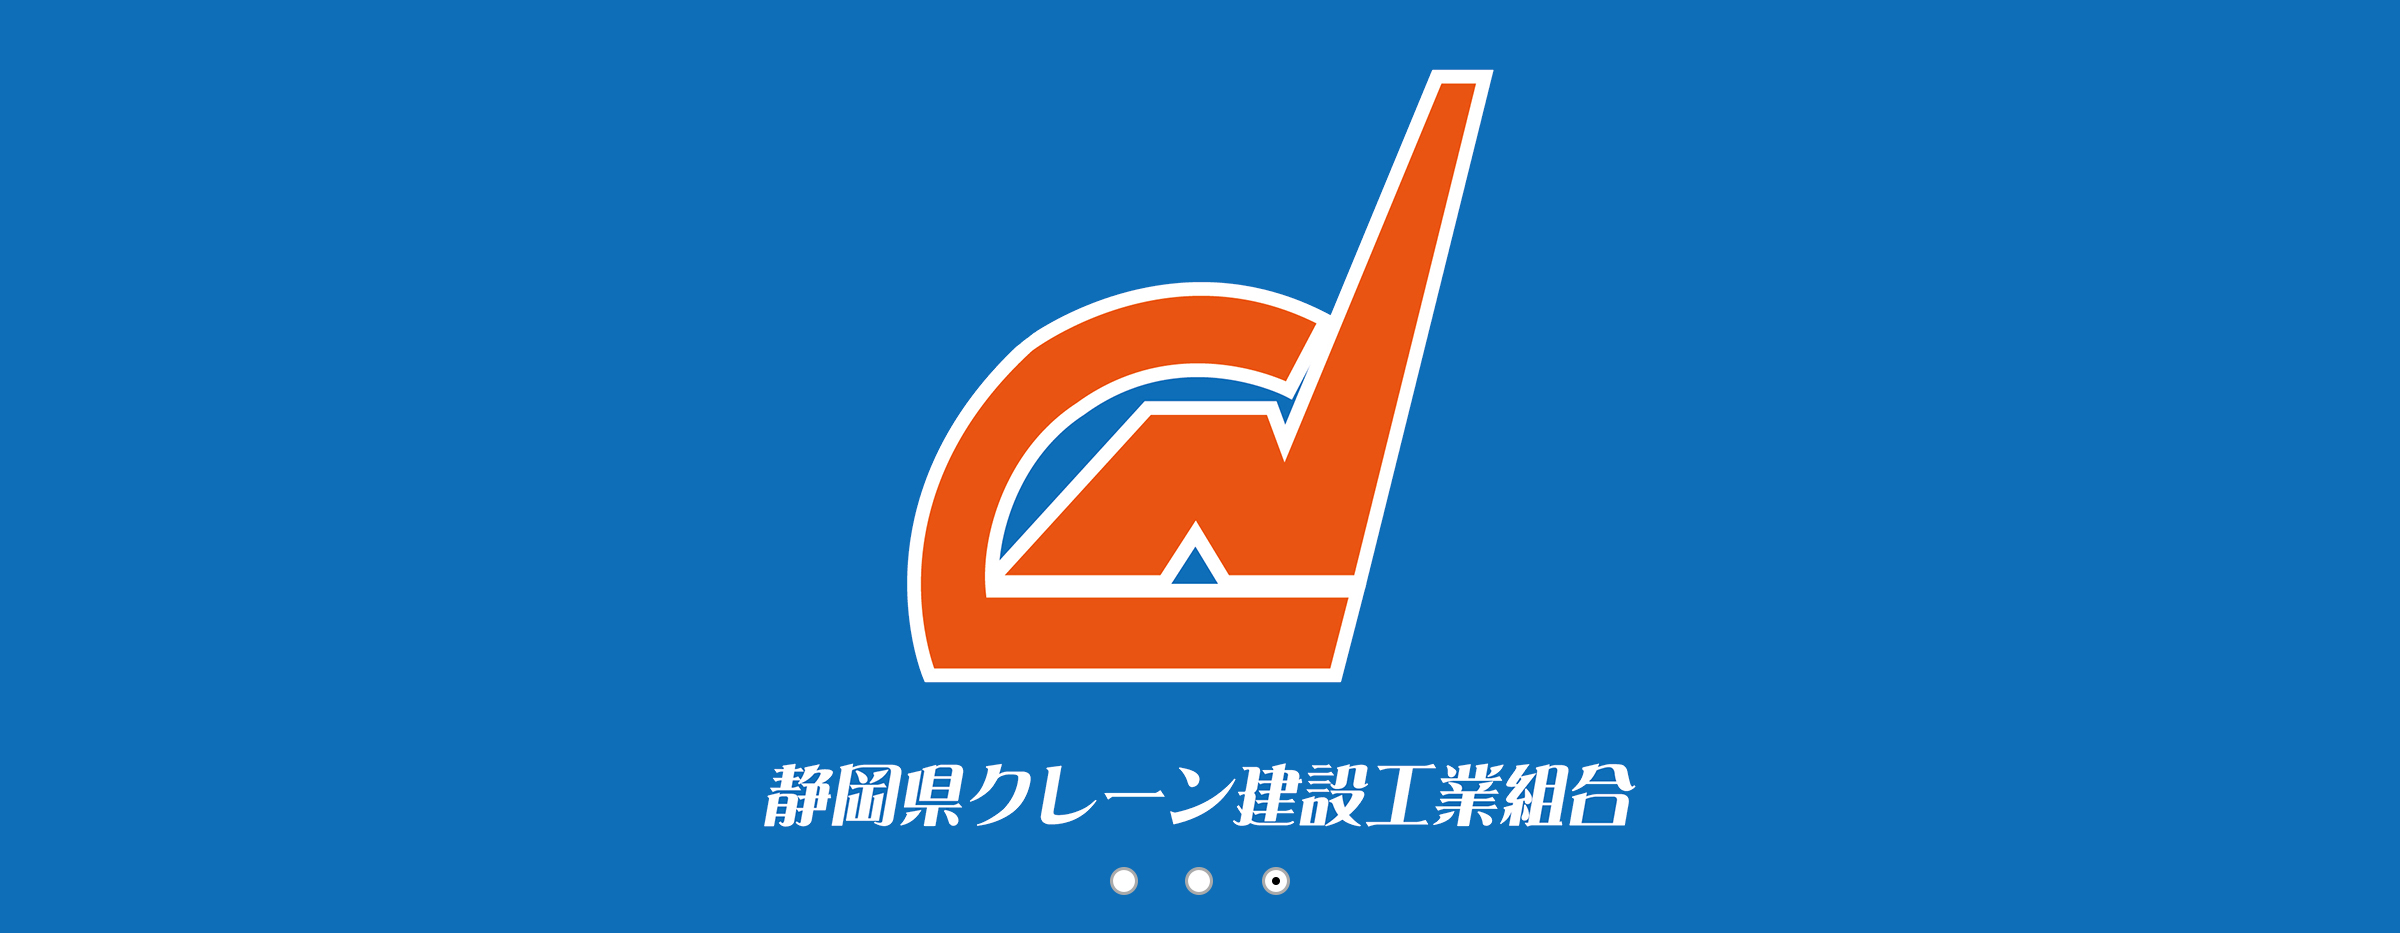 静岡県クレーン建設工業組合ロゴ入り画像